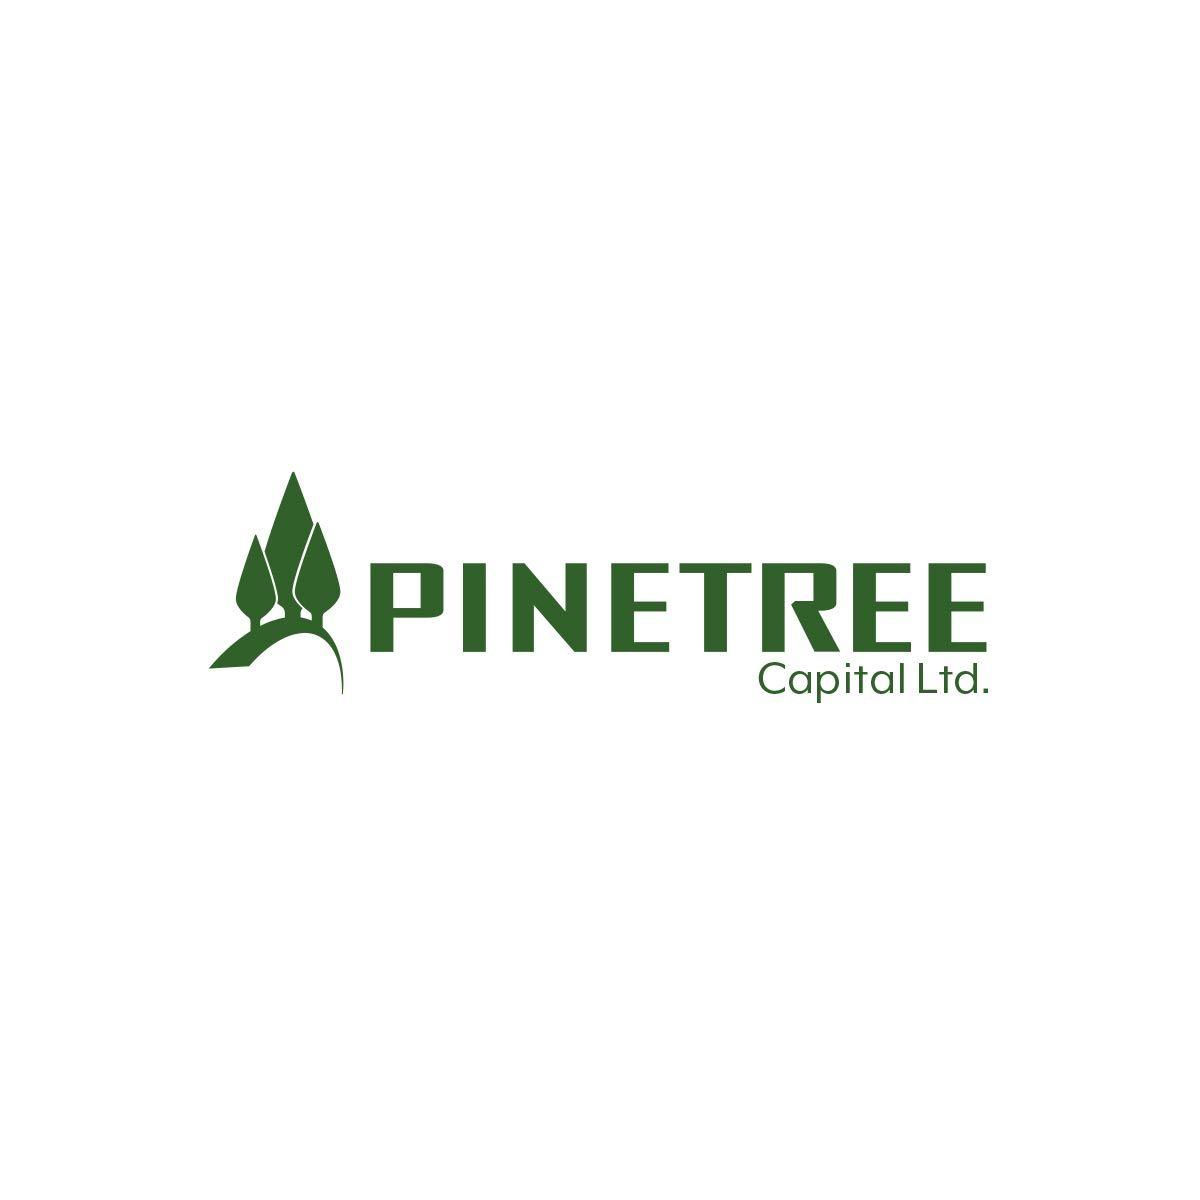 Pine Tree Company Logo - Pinetree Capital